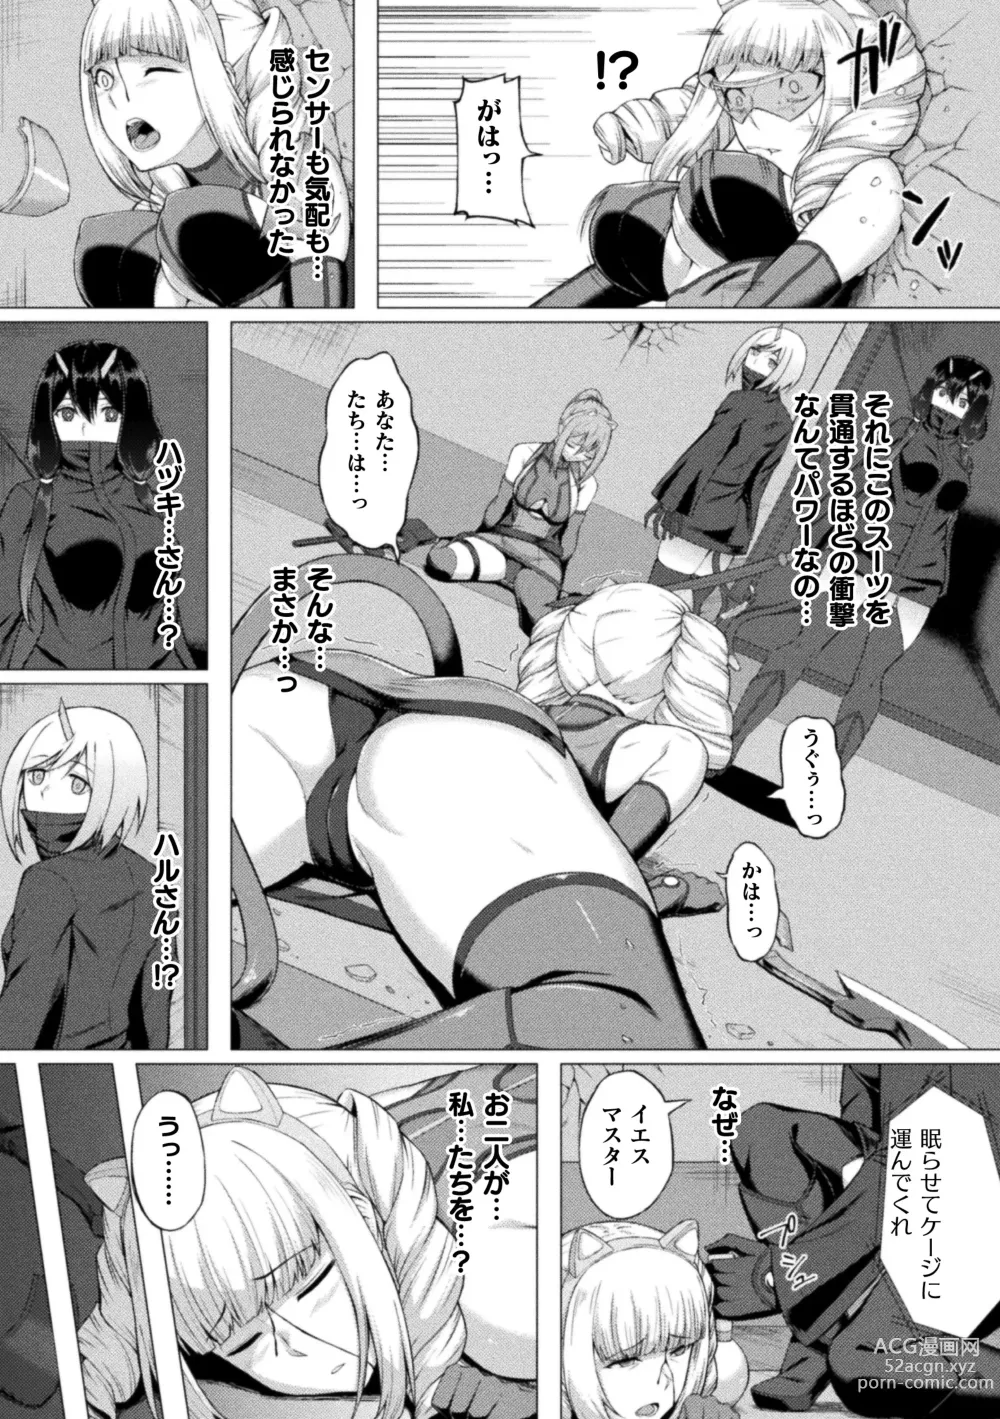 Page 7 of manga Shittsui no Otome-tachi